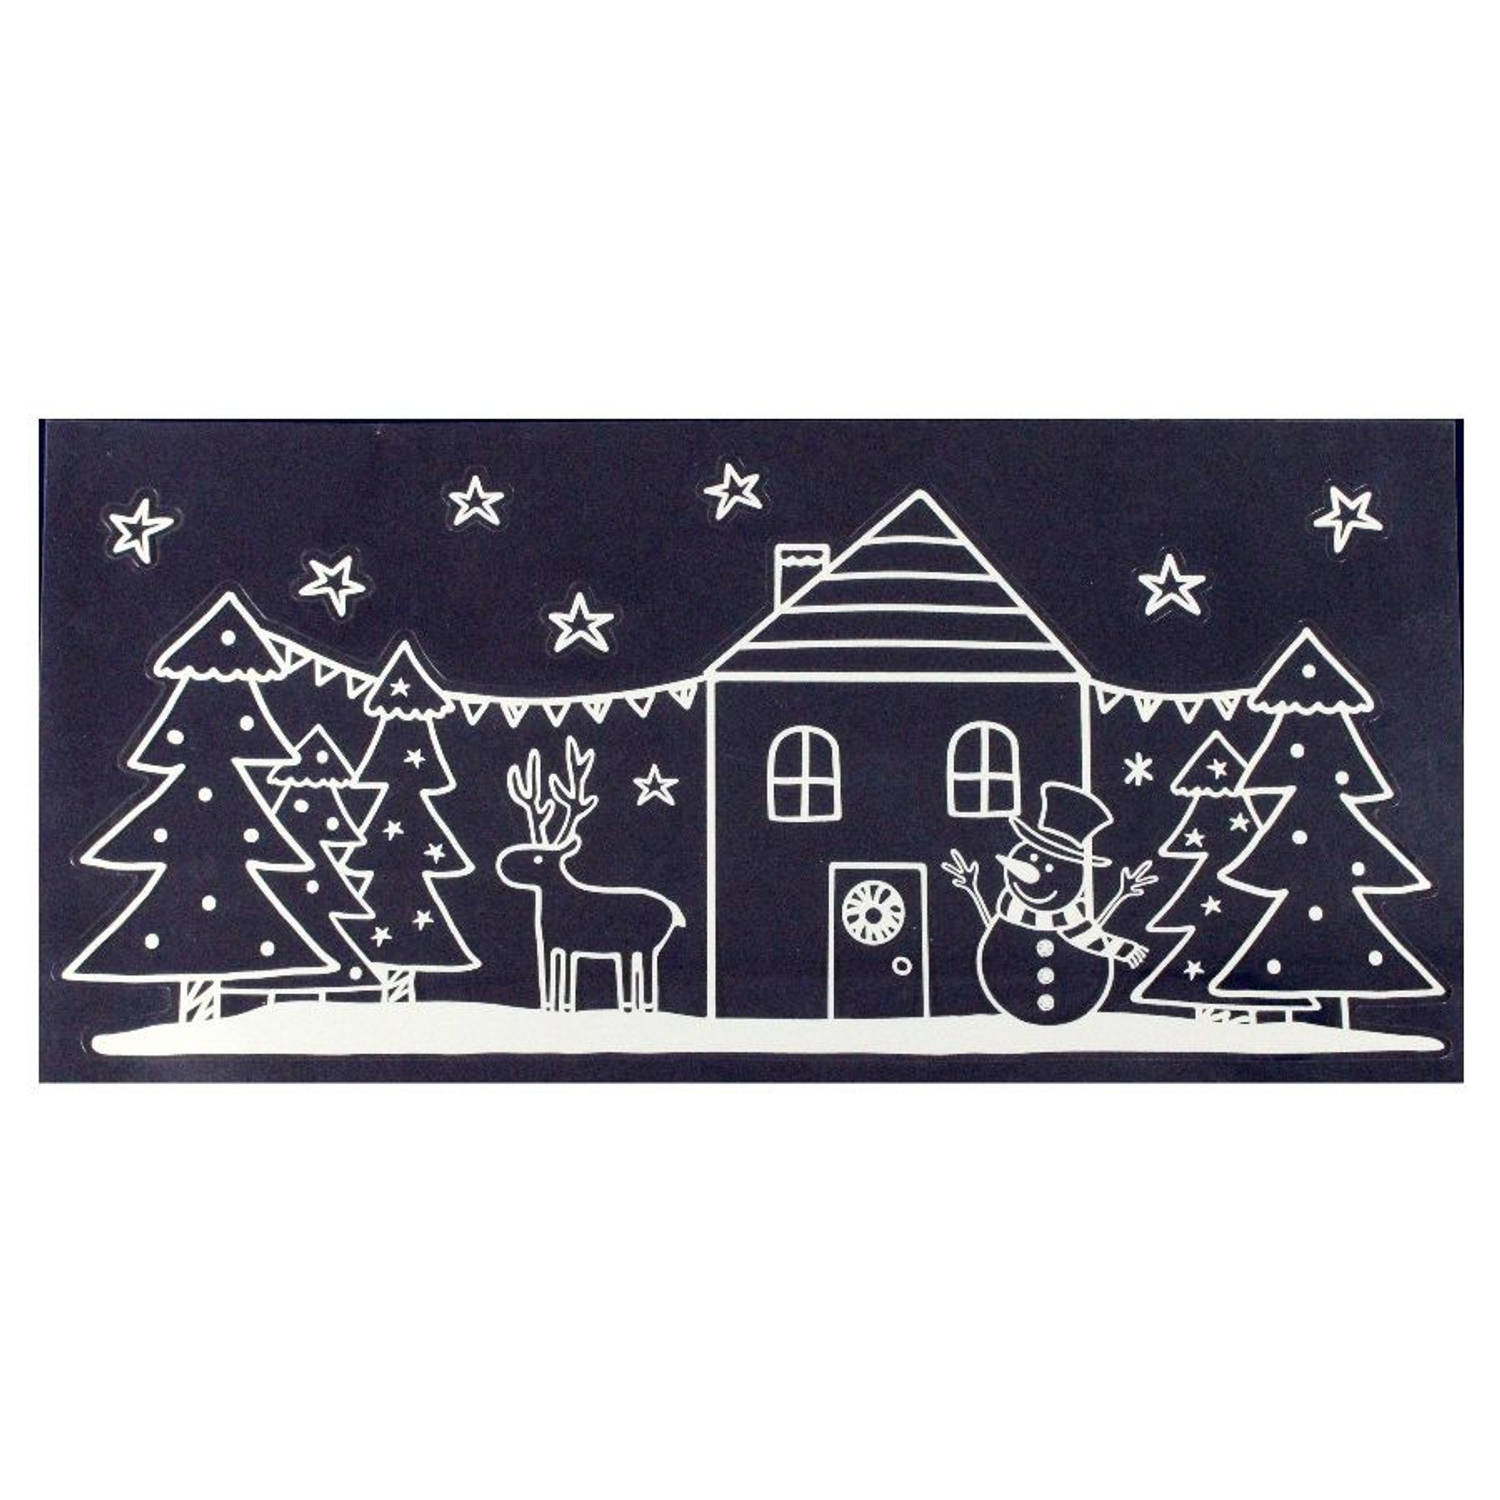 1x stuks velletjes kerst glitter raamstickers 49 cm - Raamversiering/raamdecoratie stickers kerstversiering